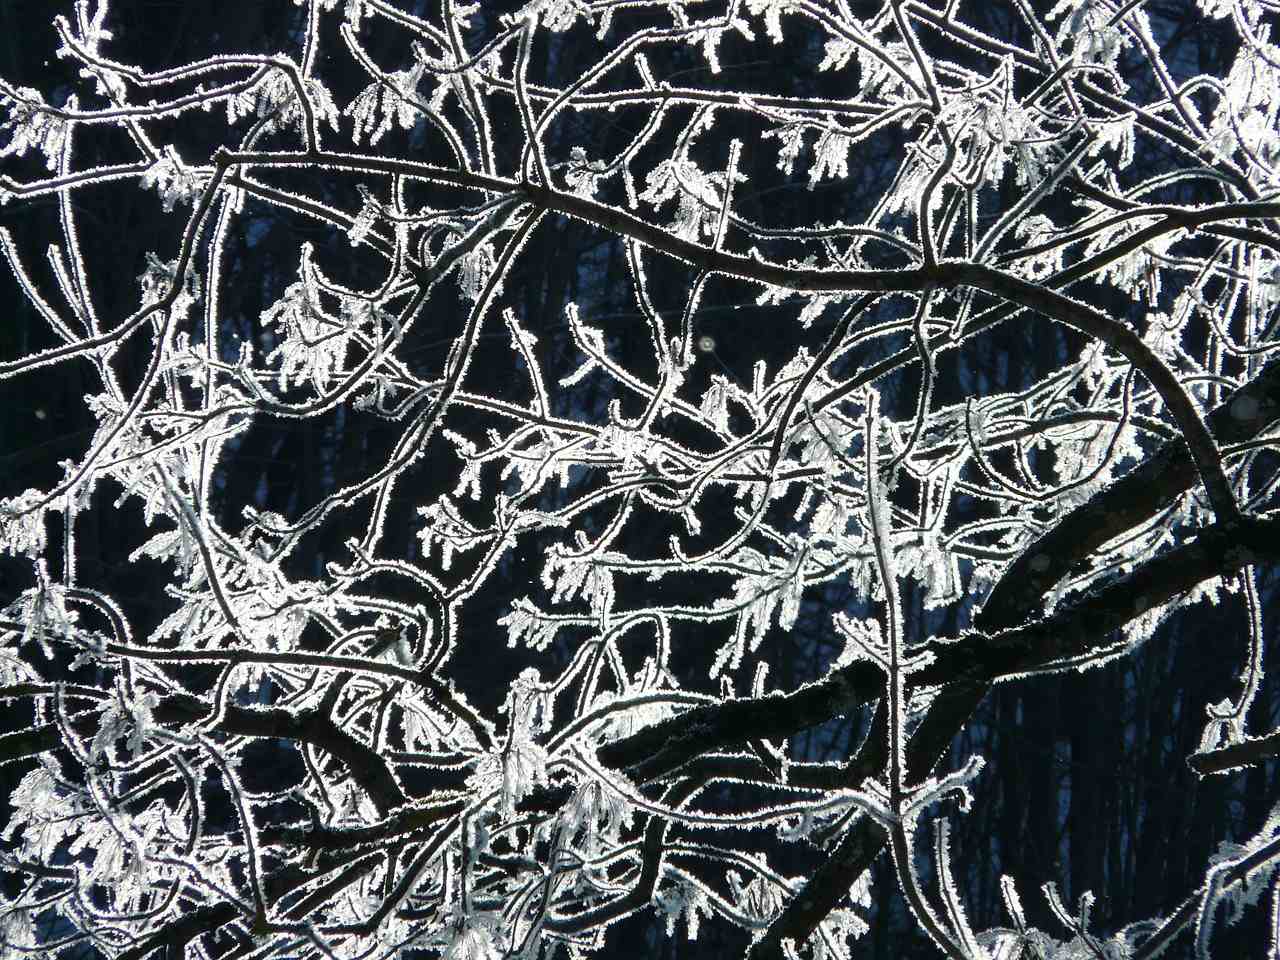 Eiskristalle an Zweigen lassen im Sonnenlicht alles glitzern - Merkur stationär